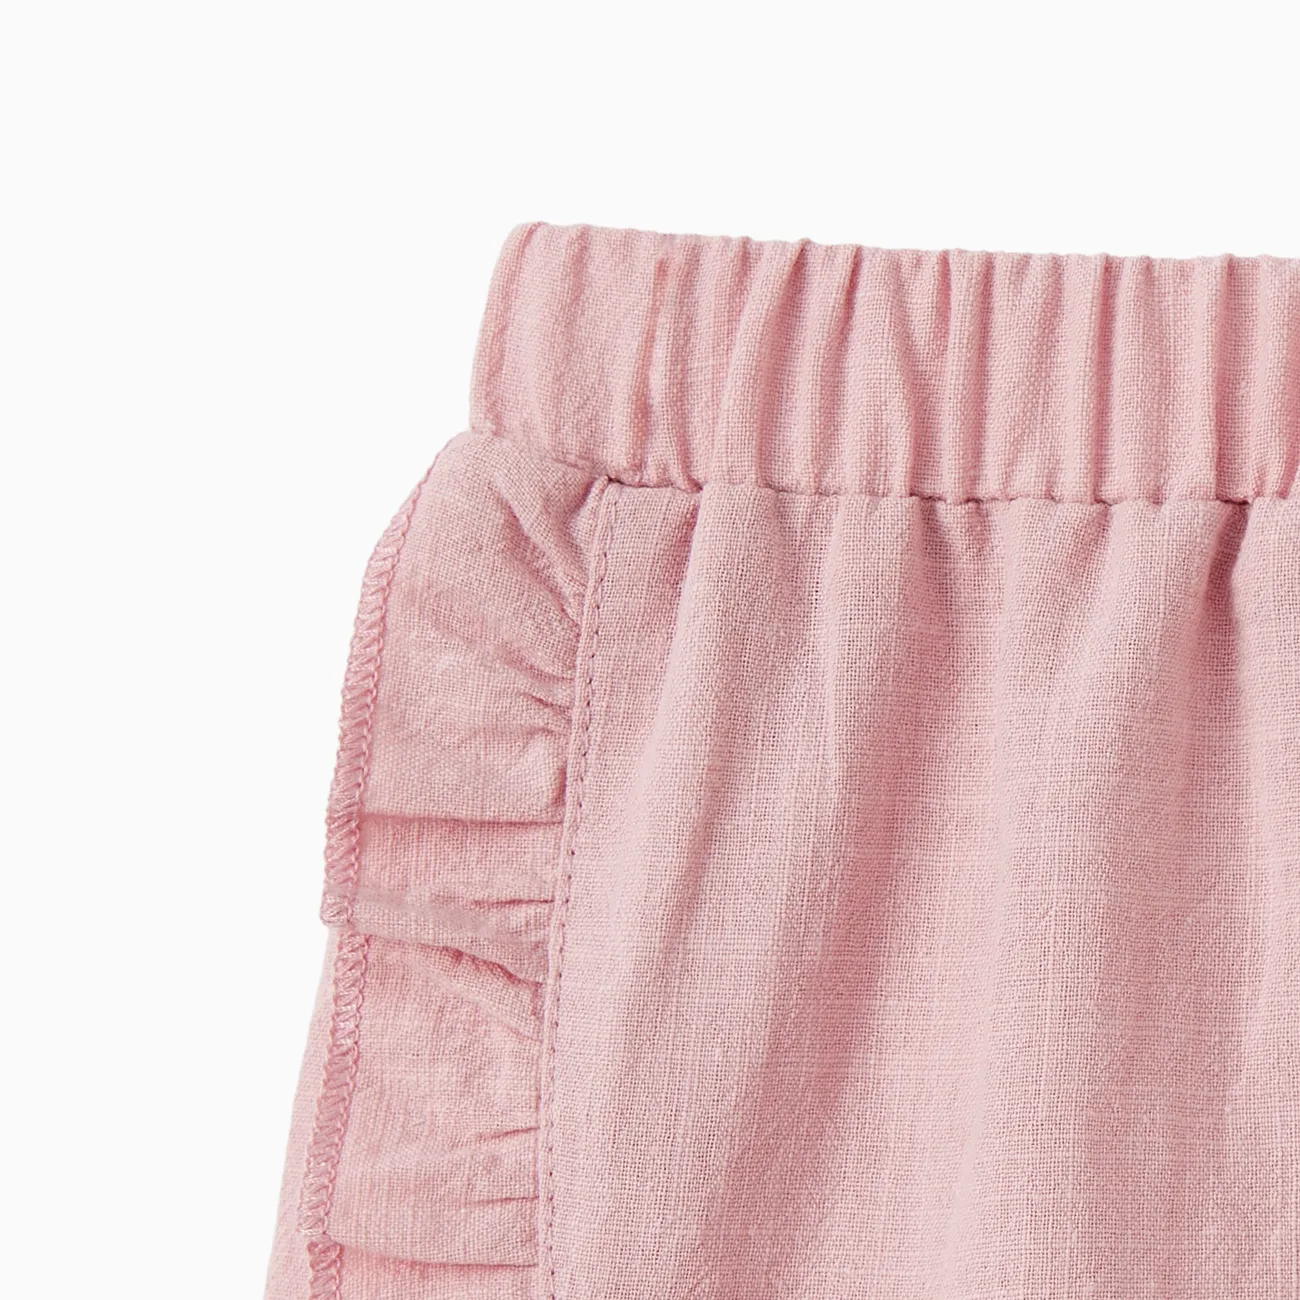 Bebé Chica Volantes Informal Pantalones cortos Rosa claro big image 1